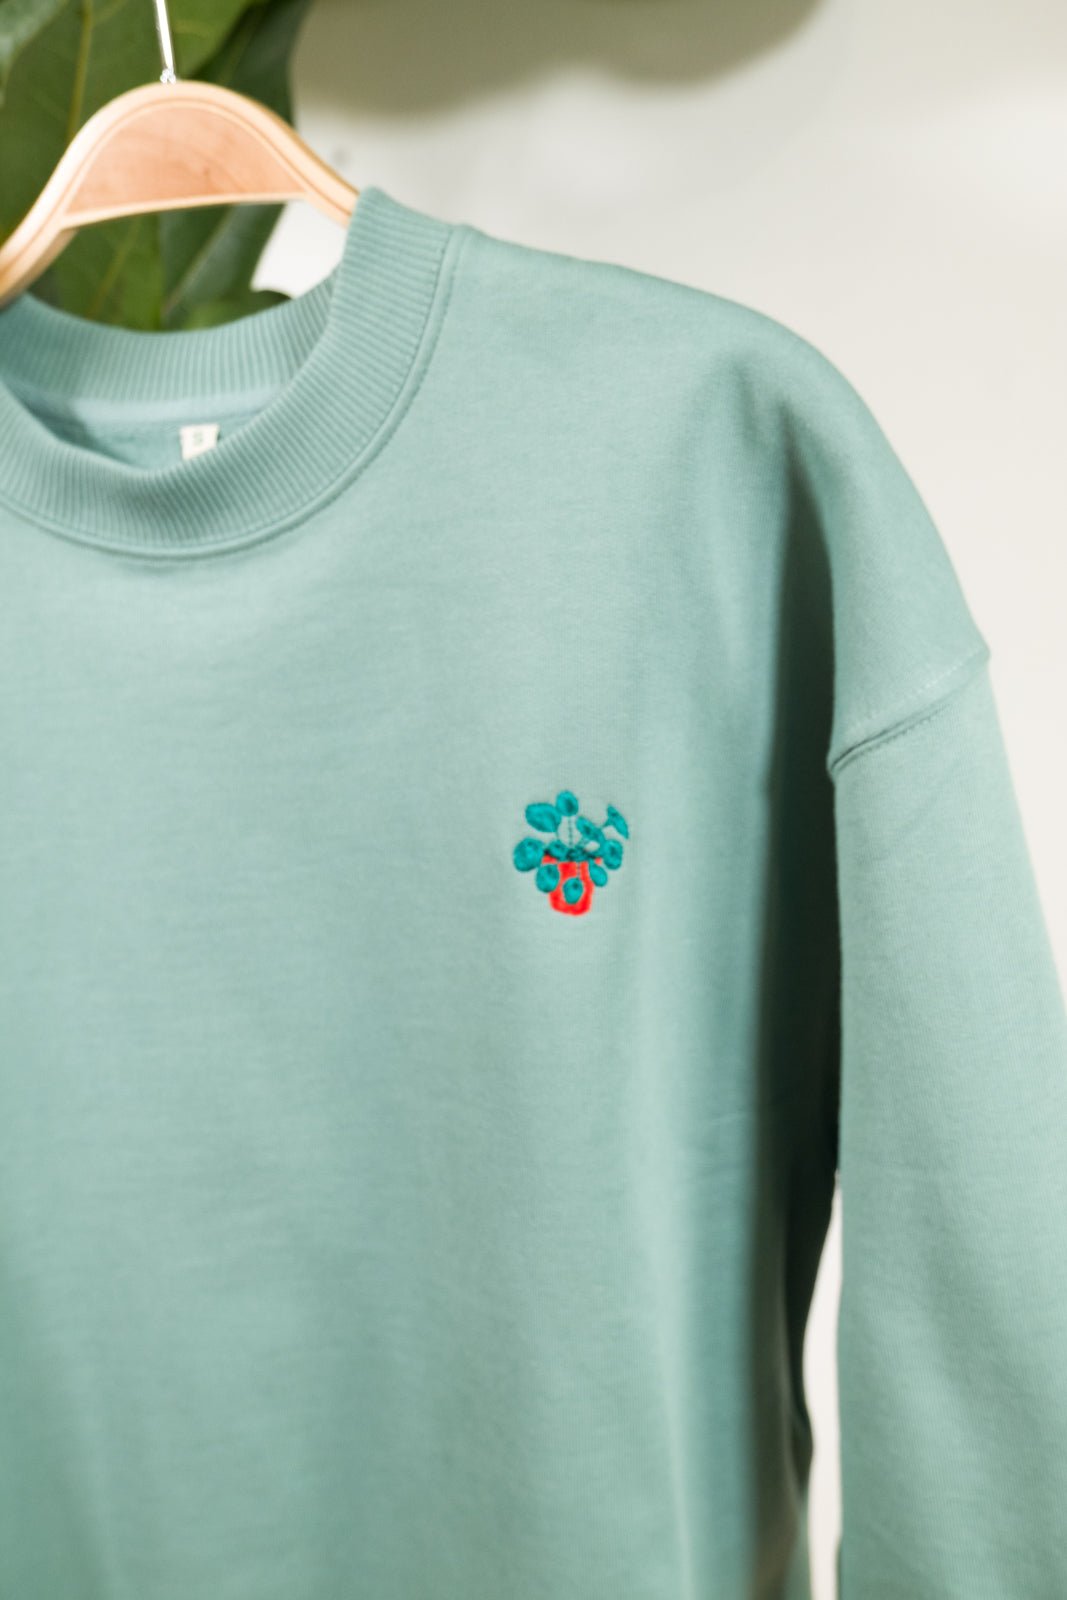 pannenkoekplant womens organic sweater te koop in de webshop van Almost Summer Amsterdam